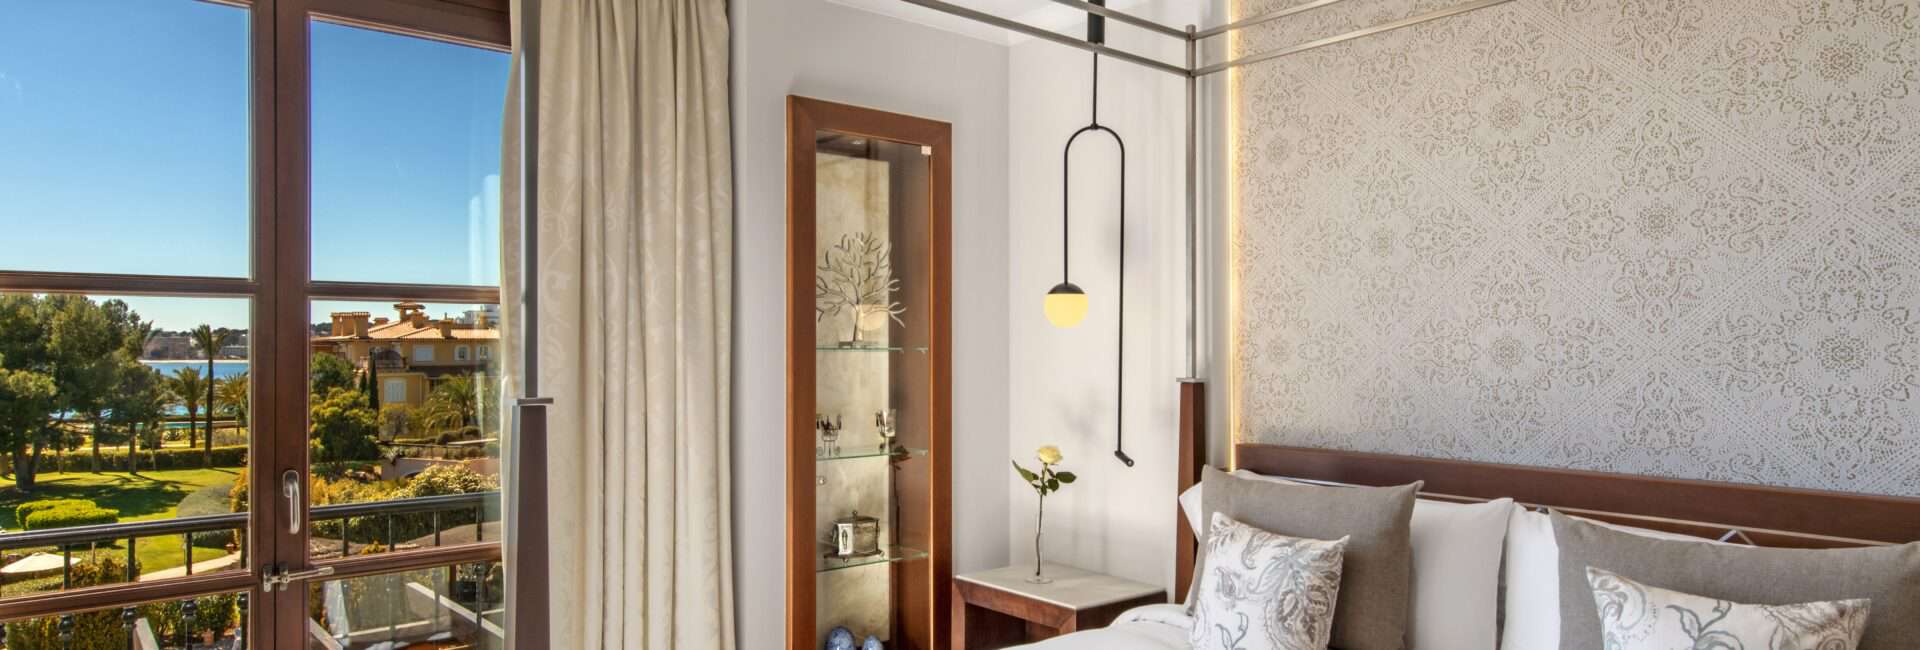 St. Regis Mardavall - Diamond Suite Bedroom